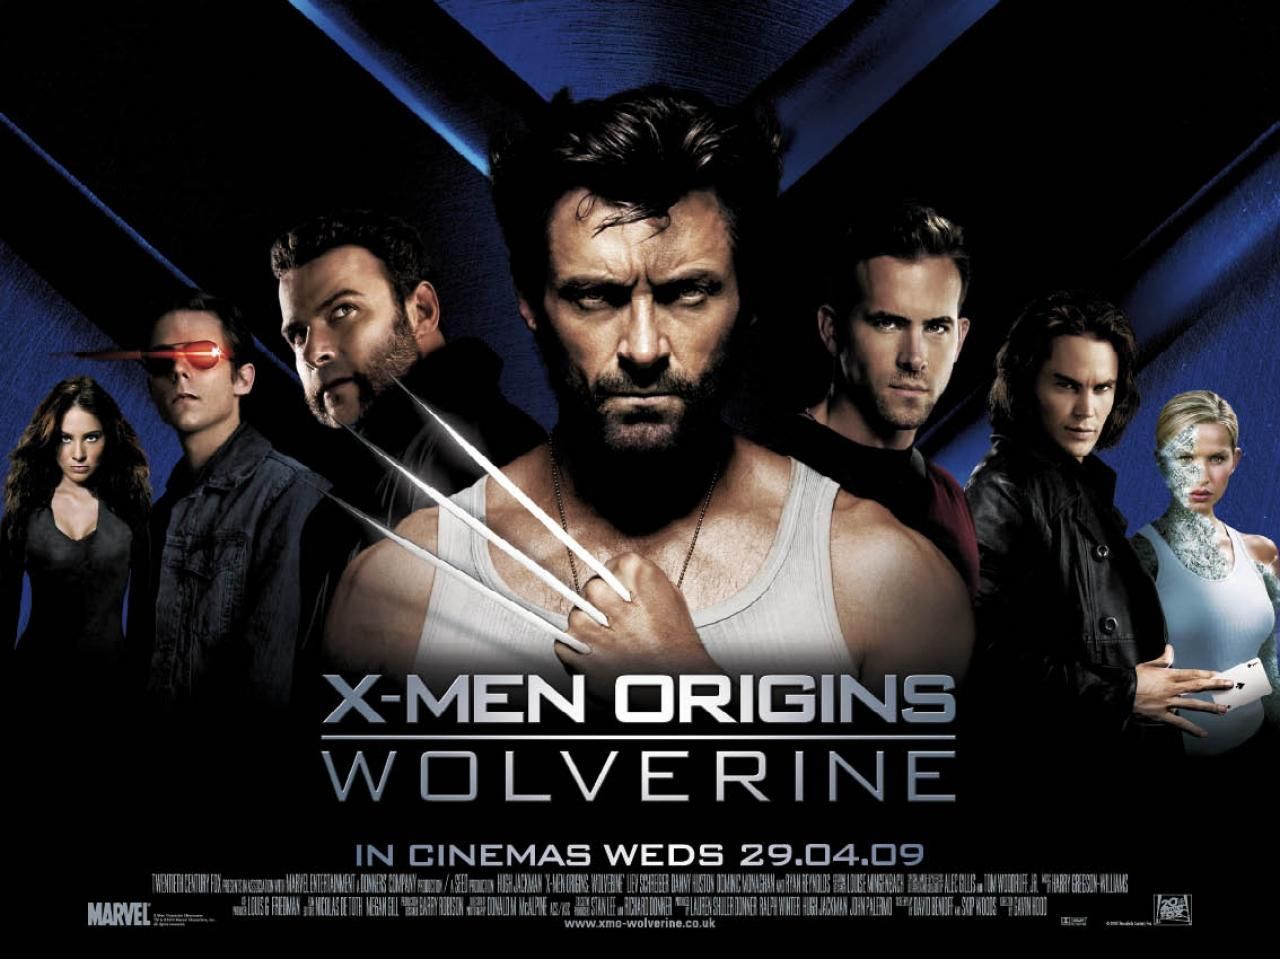 X Men Origins: Wolverine Wallpaper, Movie, HQ X Men Origins: Wolverine PictureK Wallpaper 2019